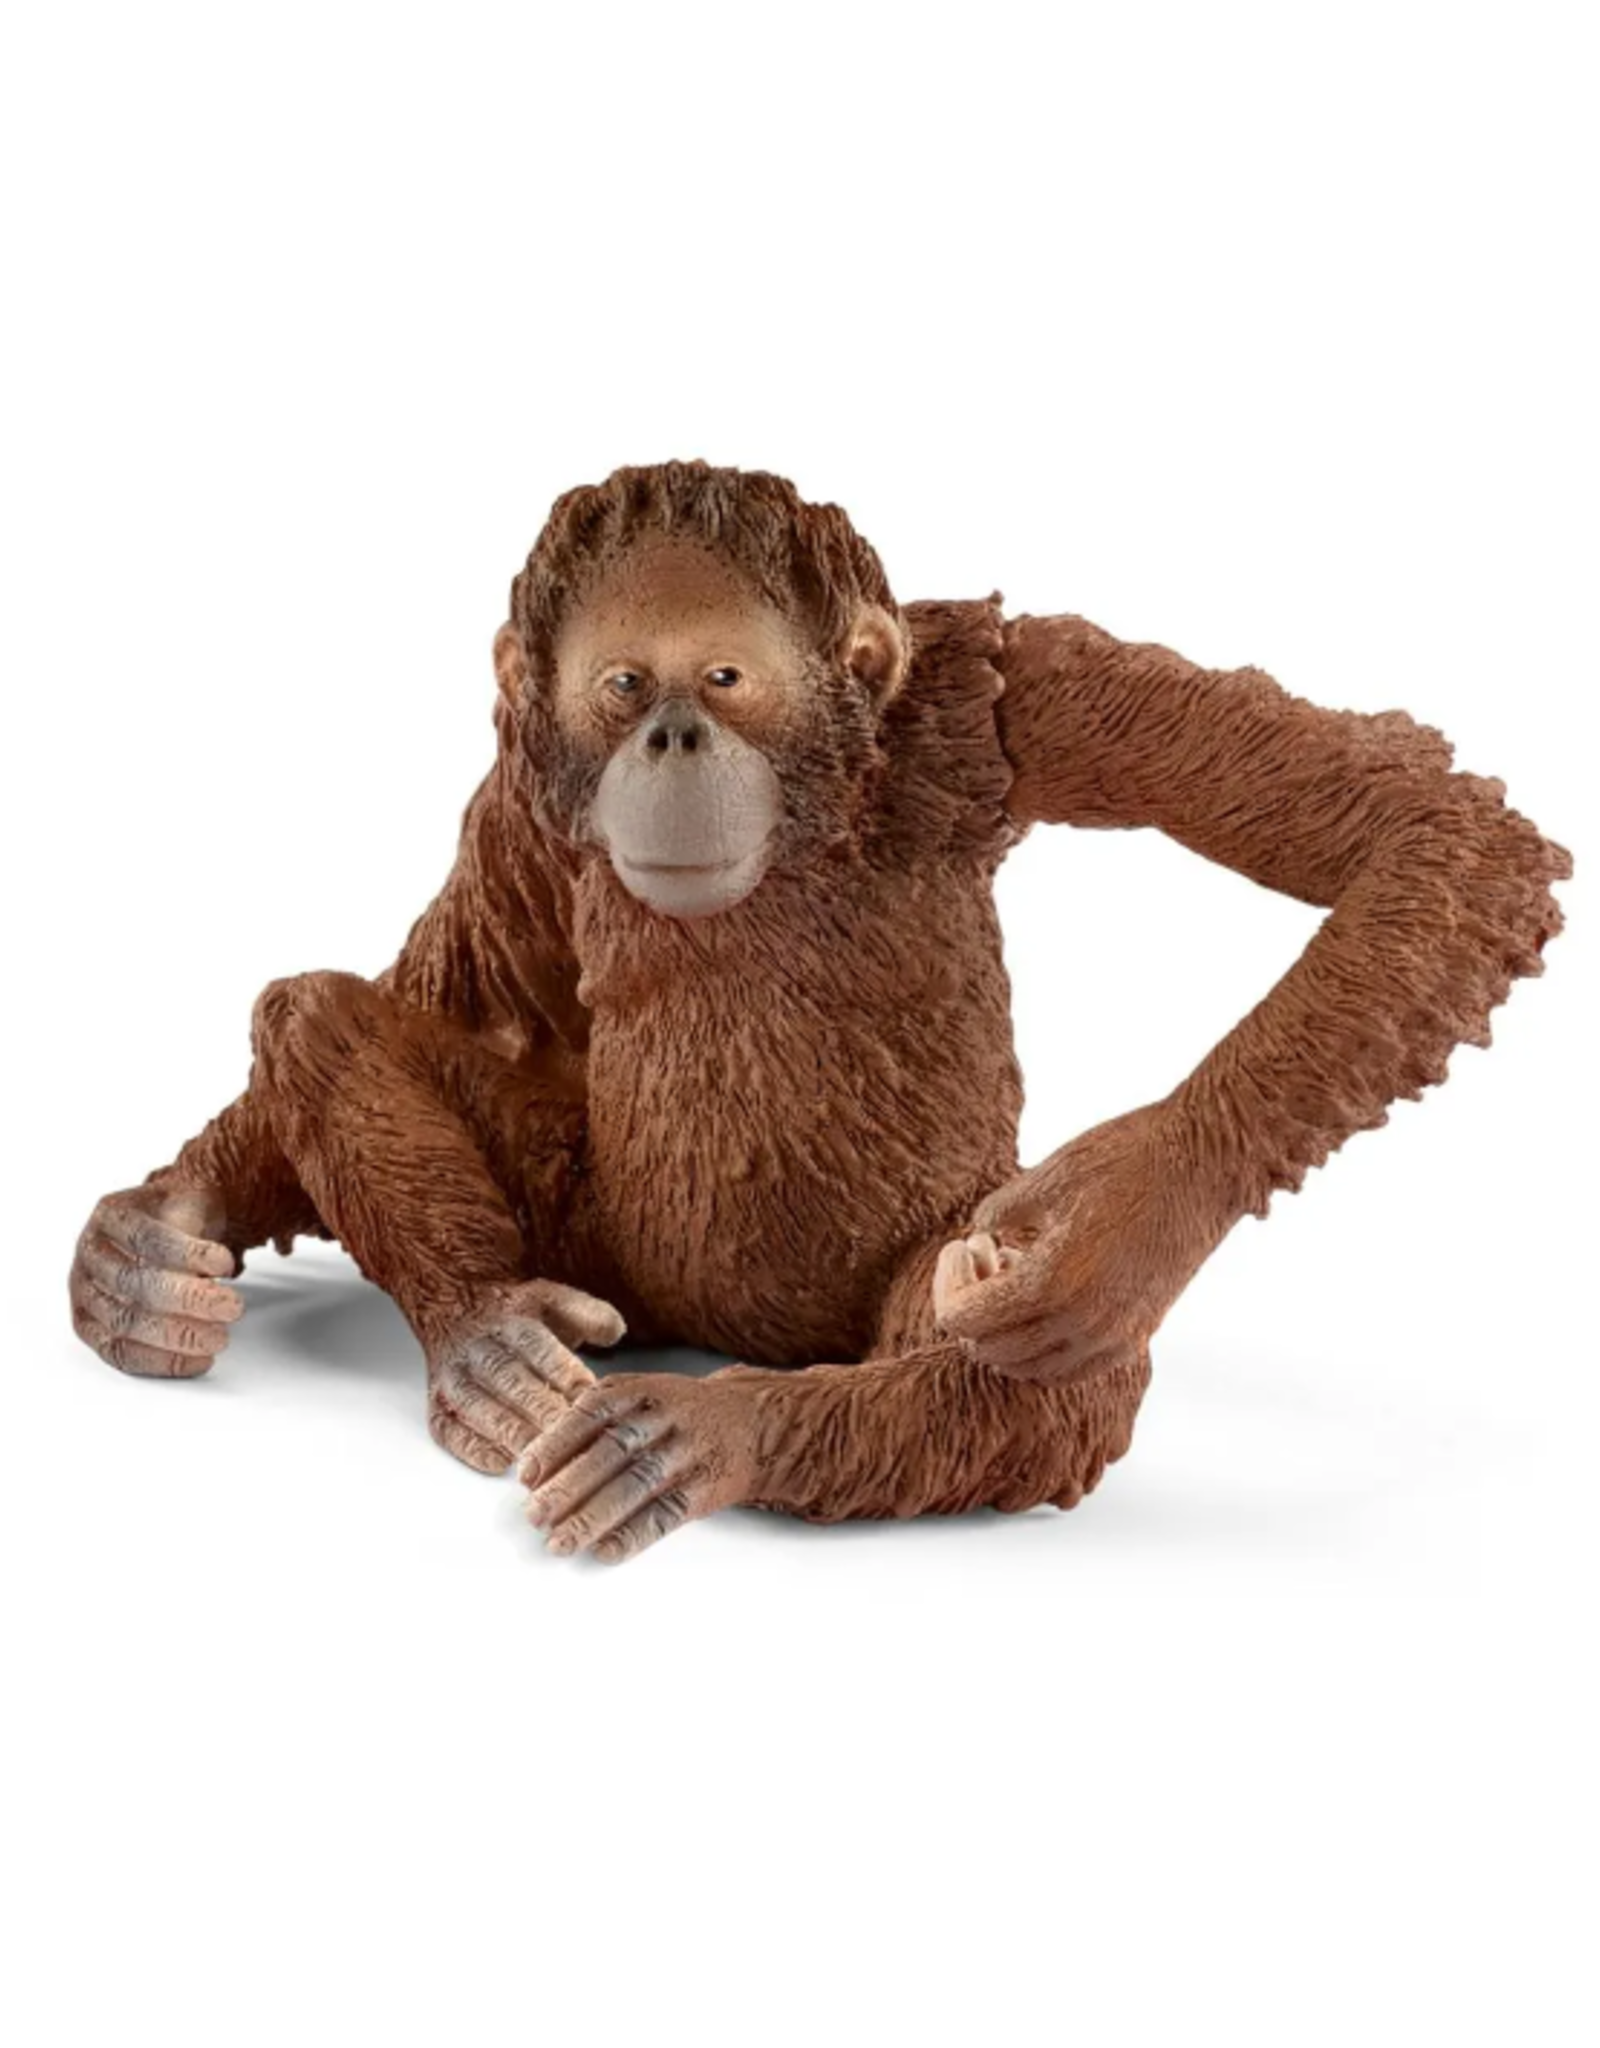 Schleich Schleich - Wild Life - 14775 - Orangutan, female